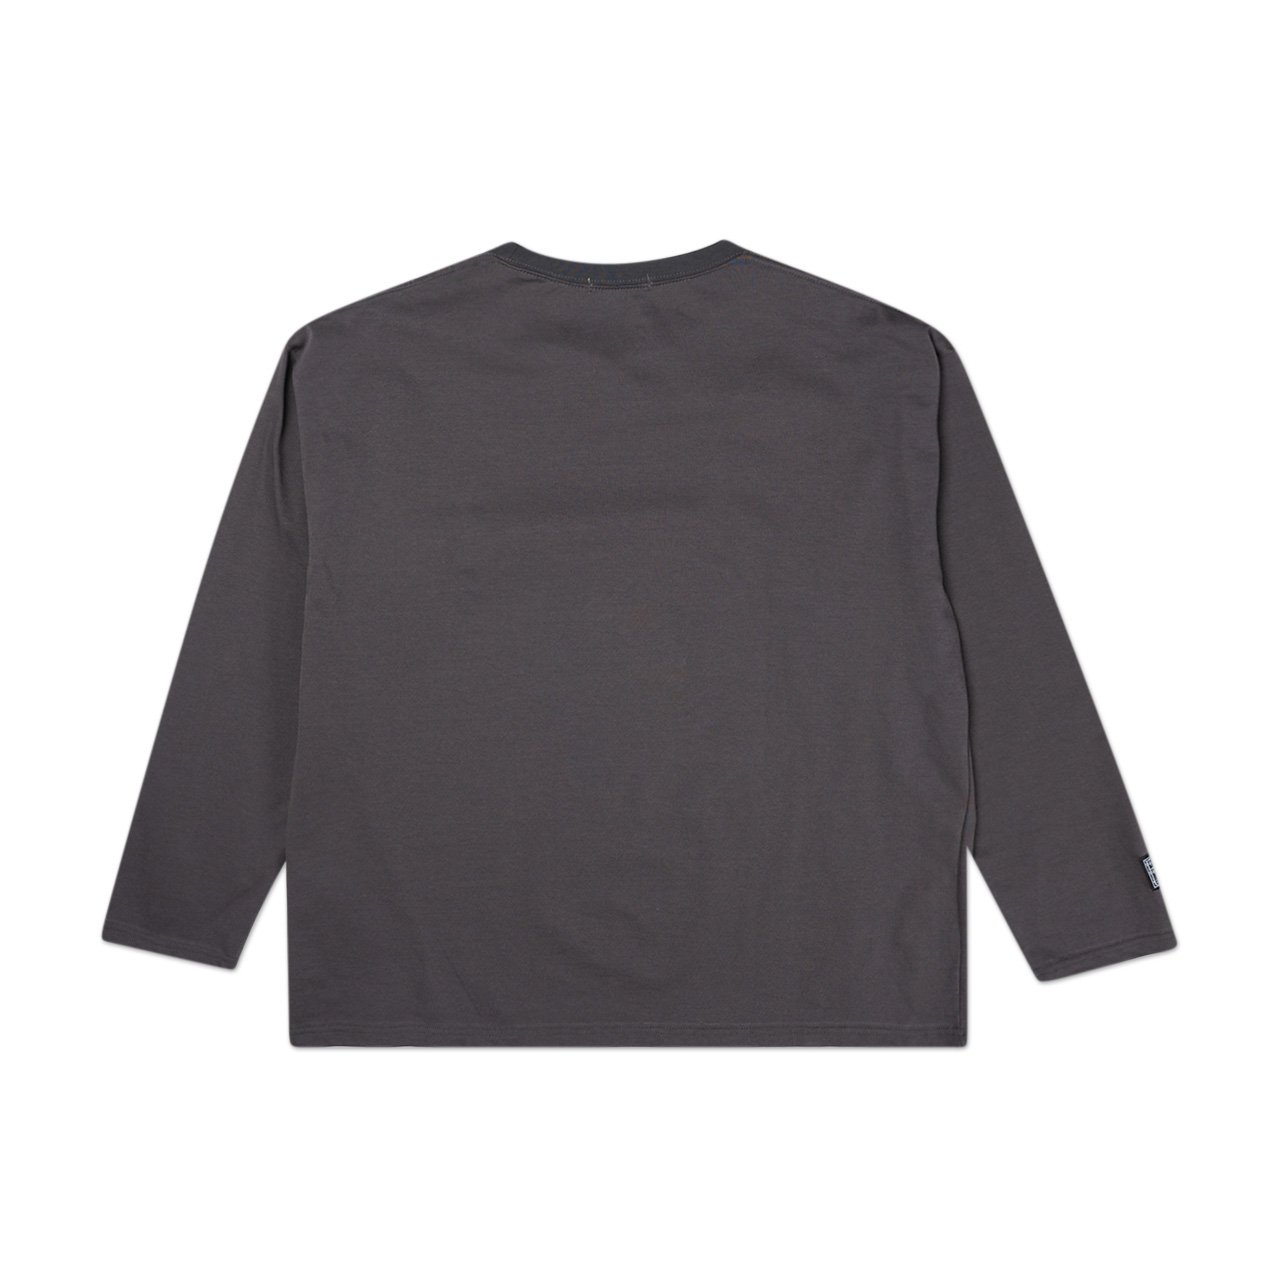 flagstuff zip big l/s t-shirt (grey) - 20ss-fs-st-01 - a.plus - Image - 2